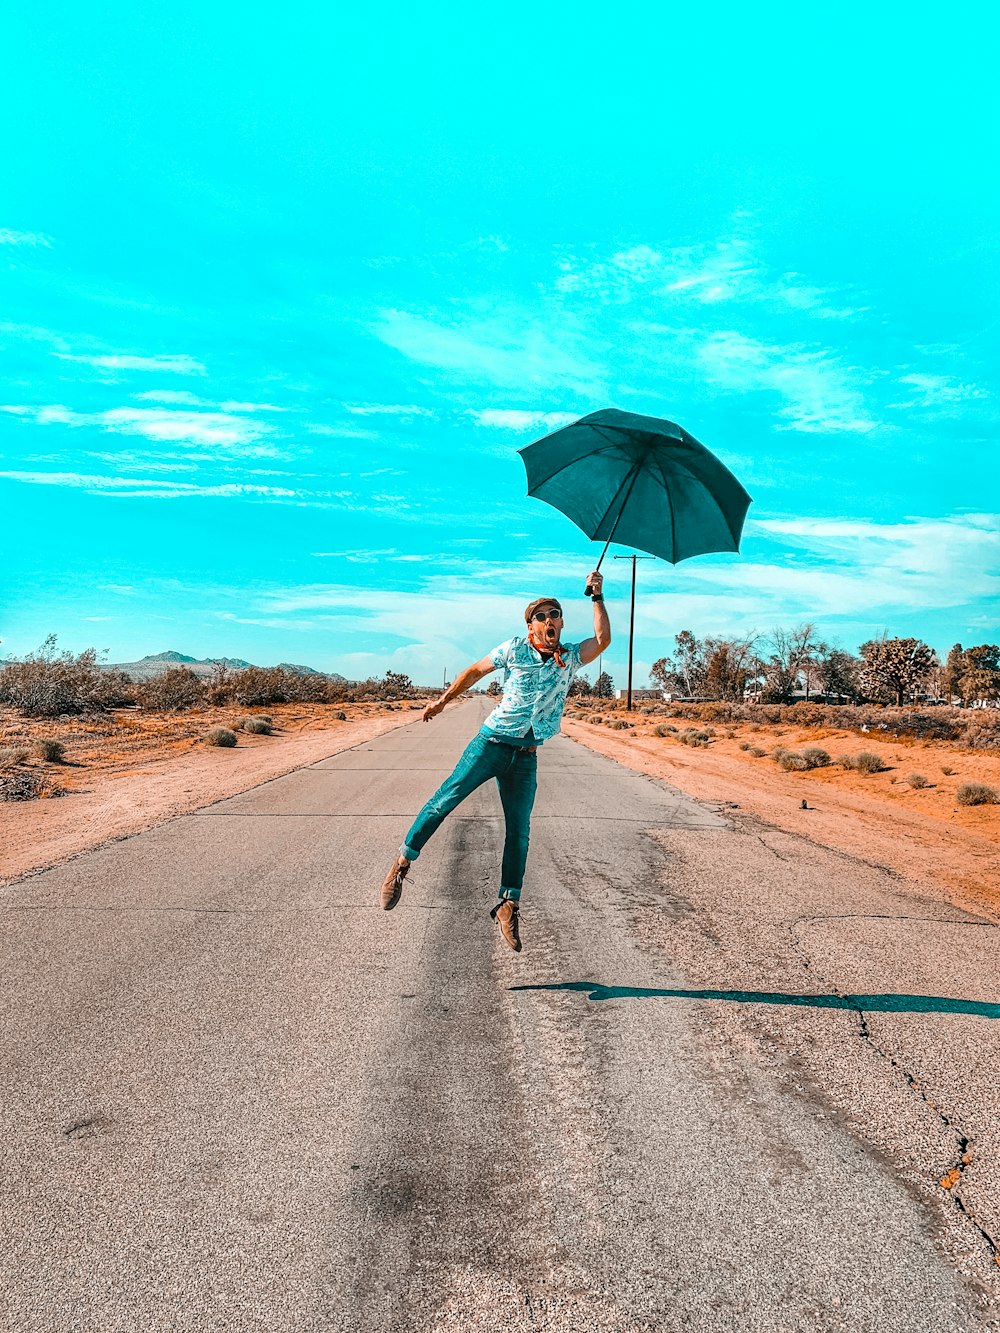 청록색 긴 소매 셔츠와 파란색 데님 청바지를 입은 여자가 우산을 들고 도로를 걷고 있��다